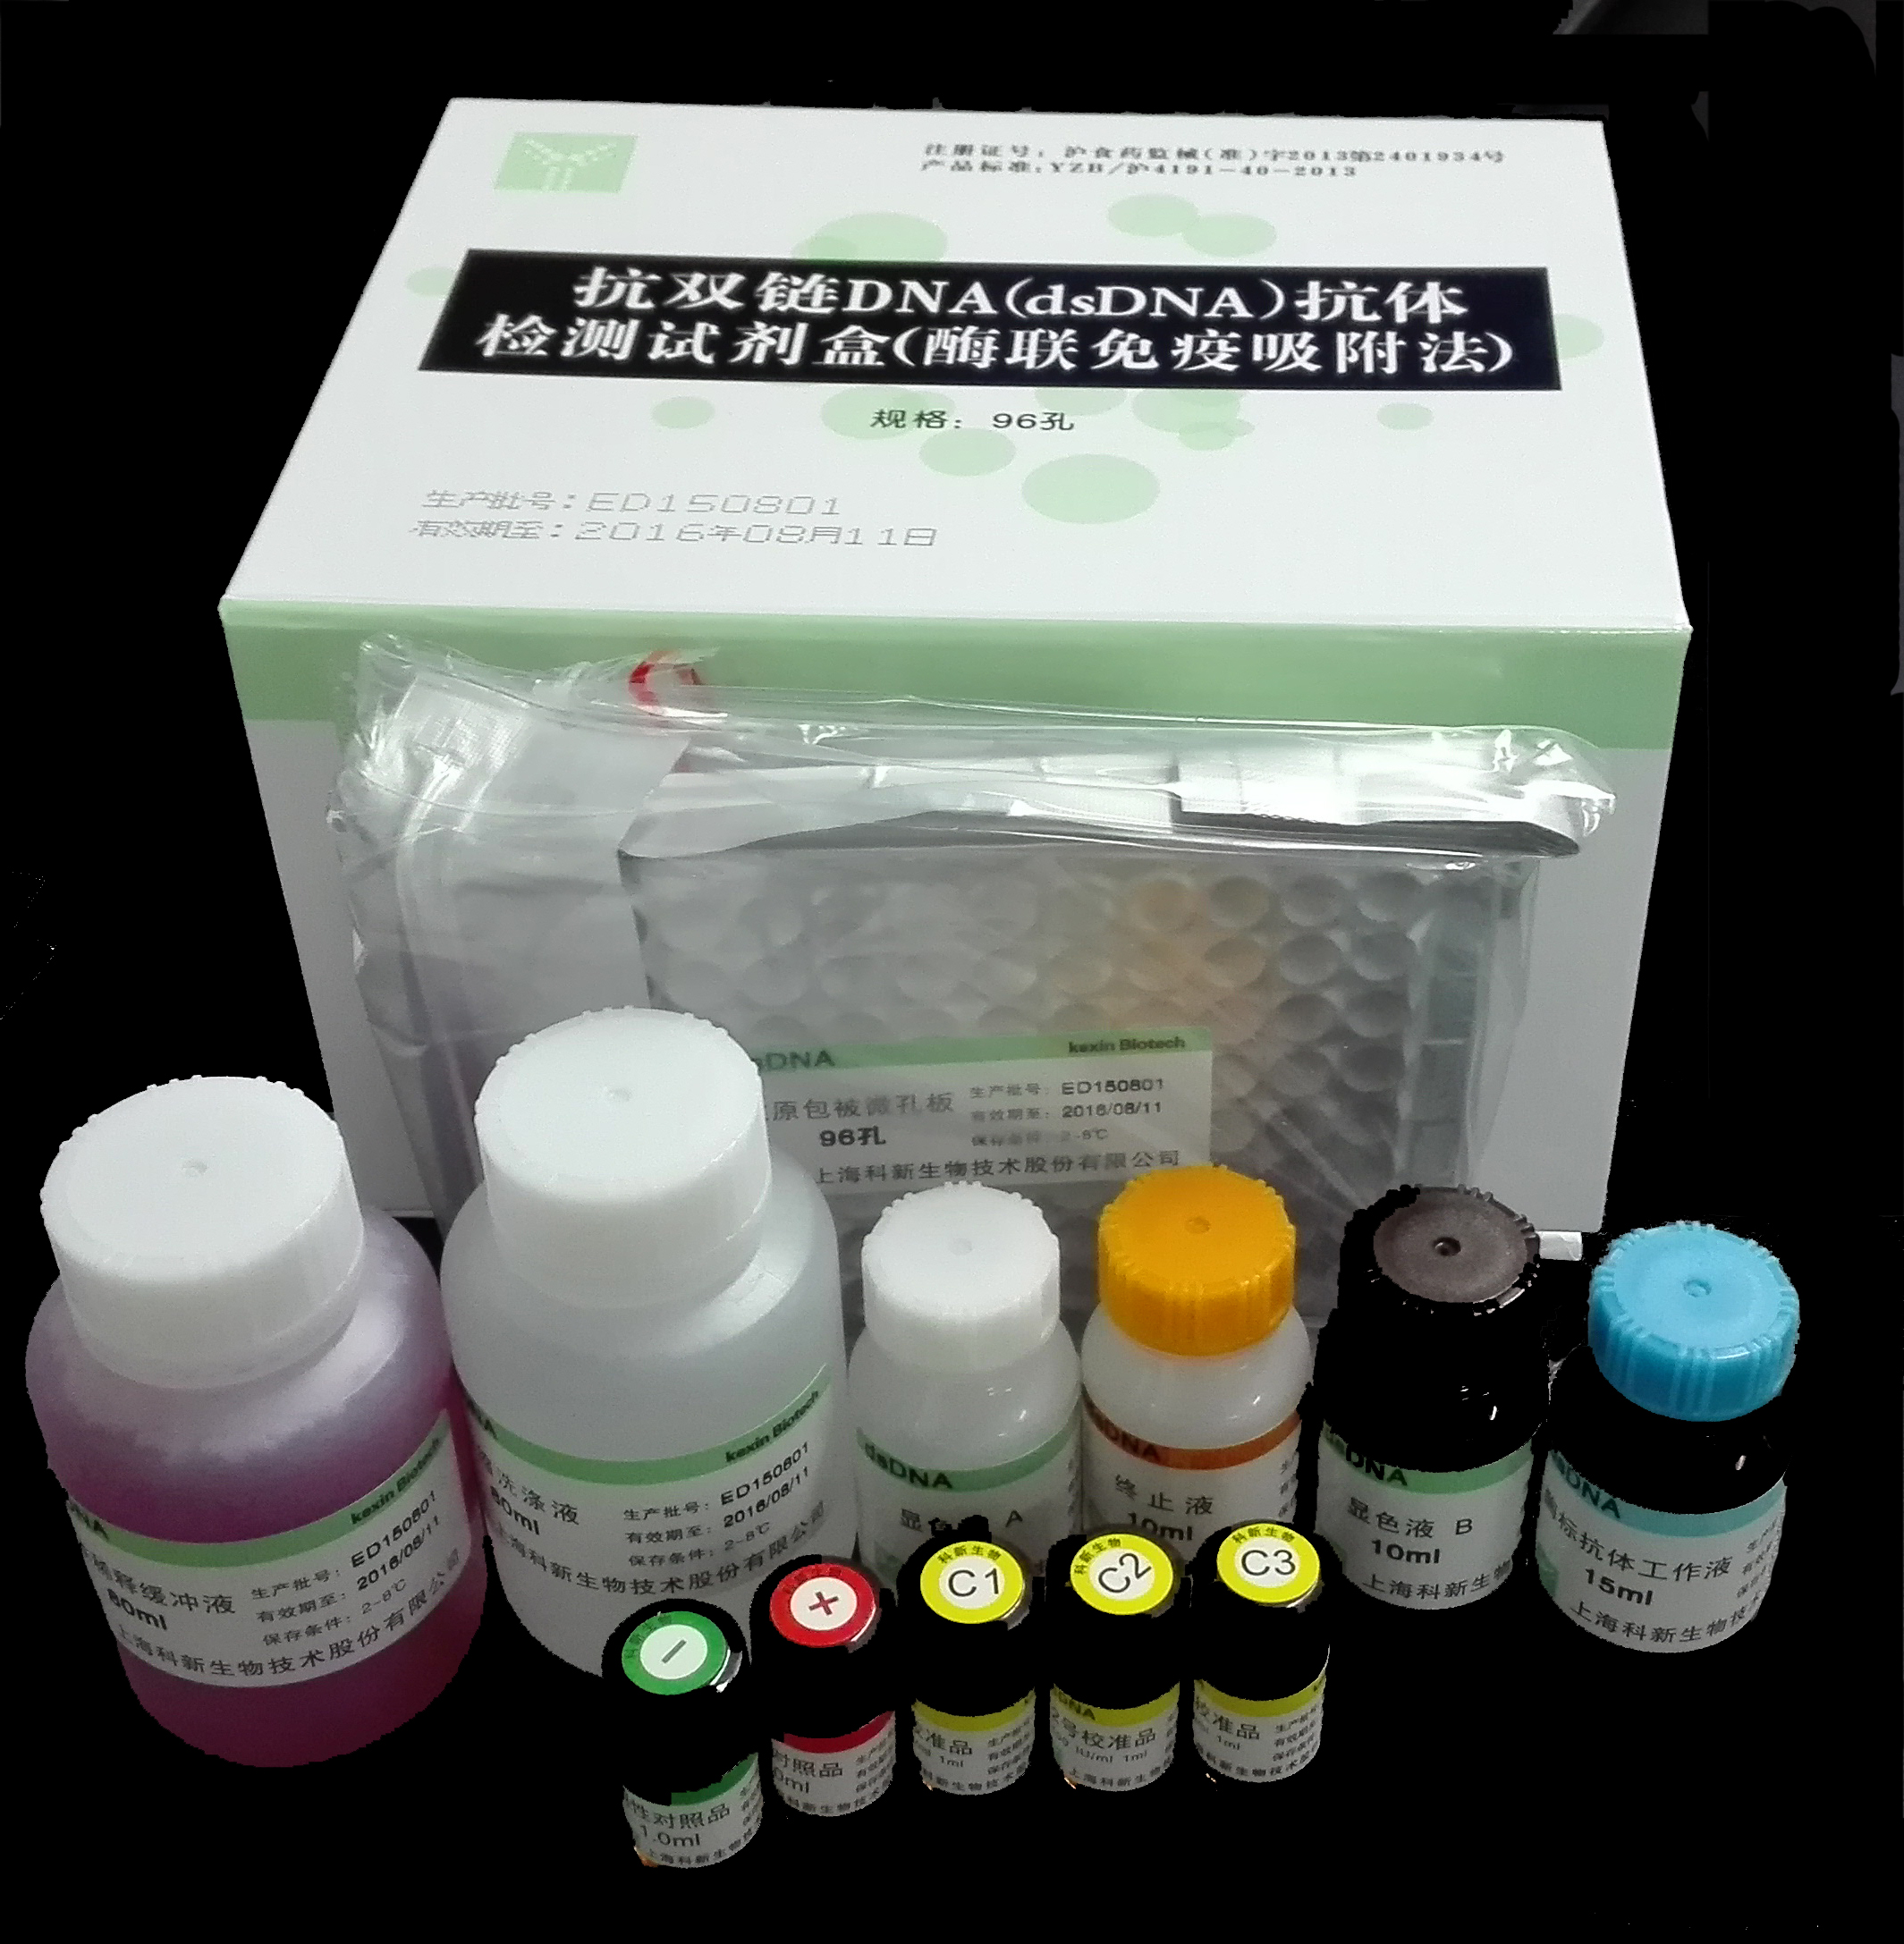 【科新】抗双链DNA（dsDNA）抗体检测试剂盒（酶联免疫吸附法）